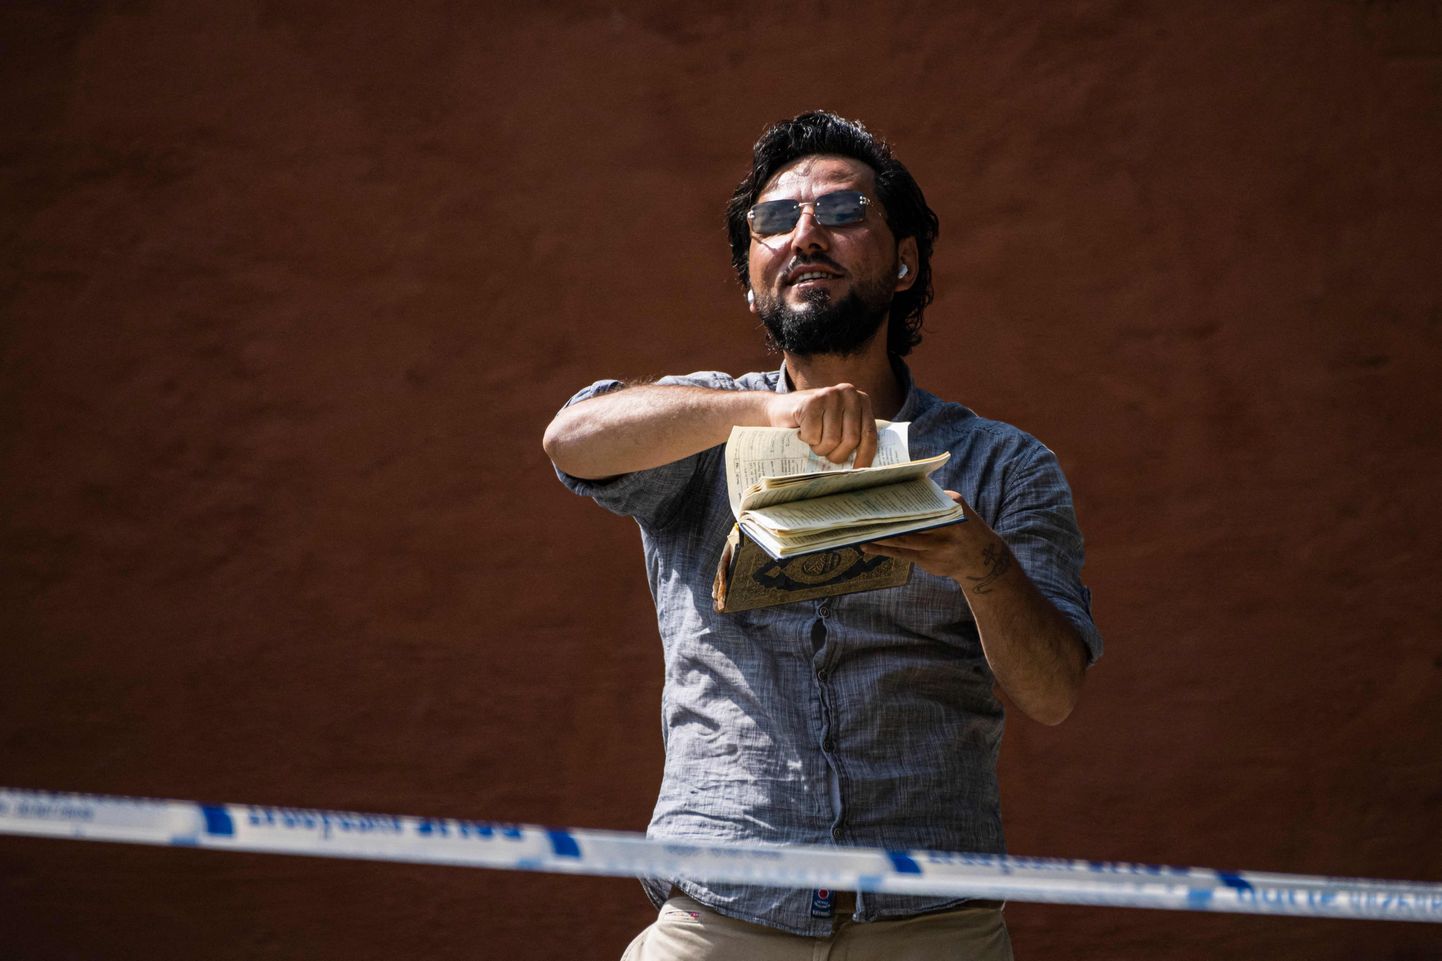 Iraagist pärit Salwan Momika, kes elab Rootsis elamisloa alusel, rebis 28. juunil 2023 Stockholmis mošee juures islami pühast raamatust koraanist lehti ja põletas neid. Mehe sõnul kavatseb ta oma tegu korrata